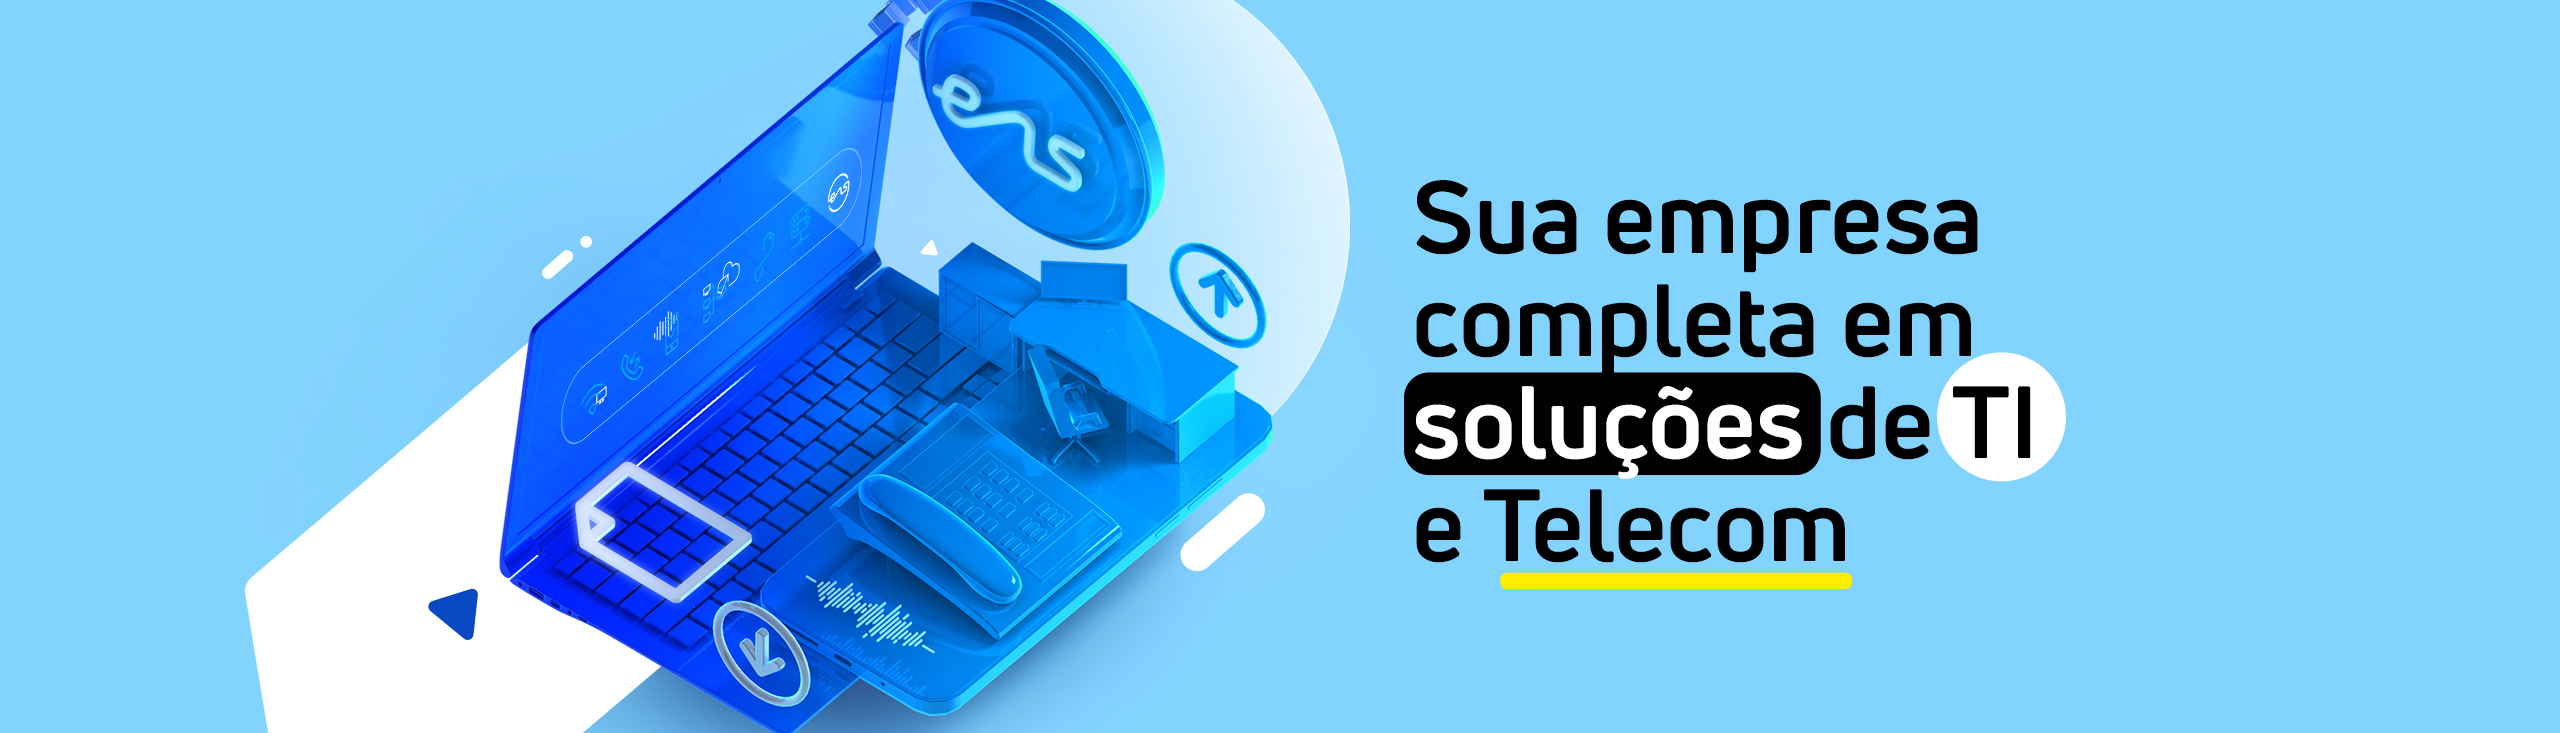 Ensite Brasil Telecomunicações Ltda.